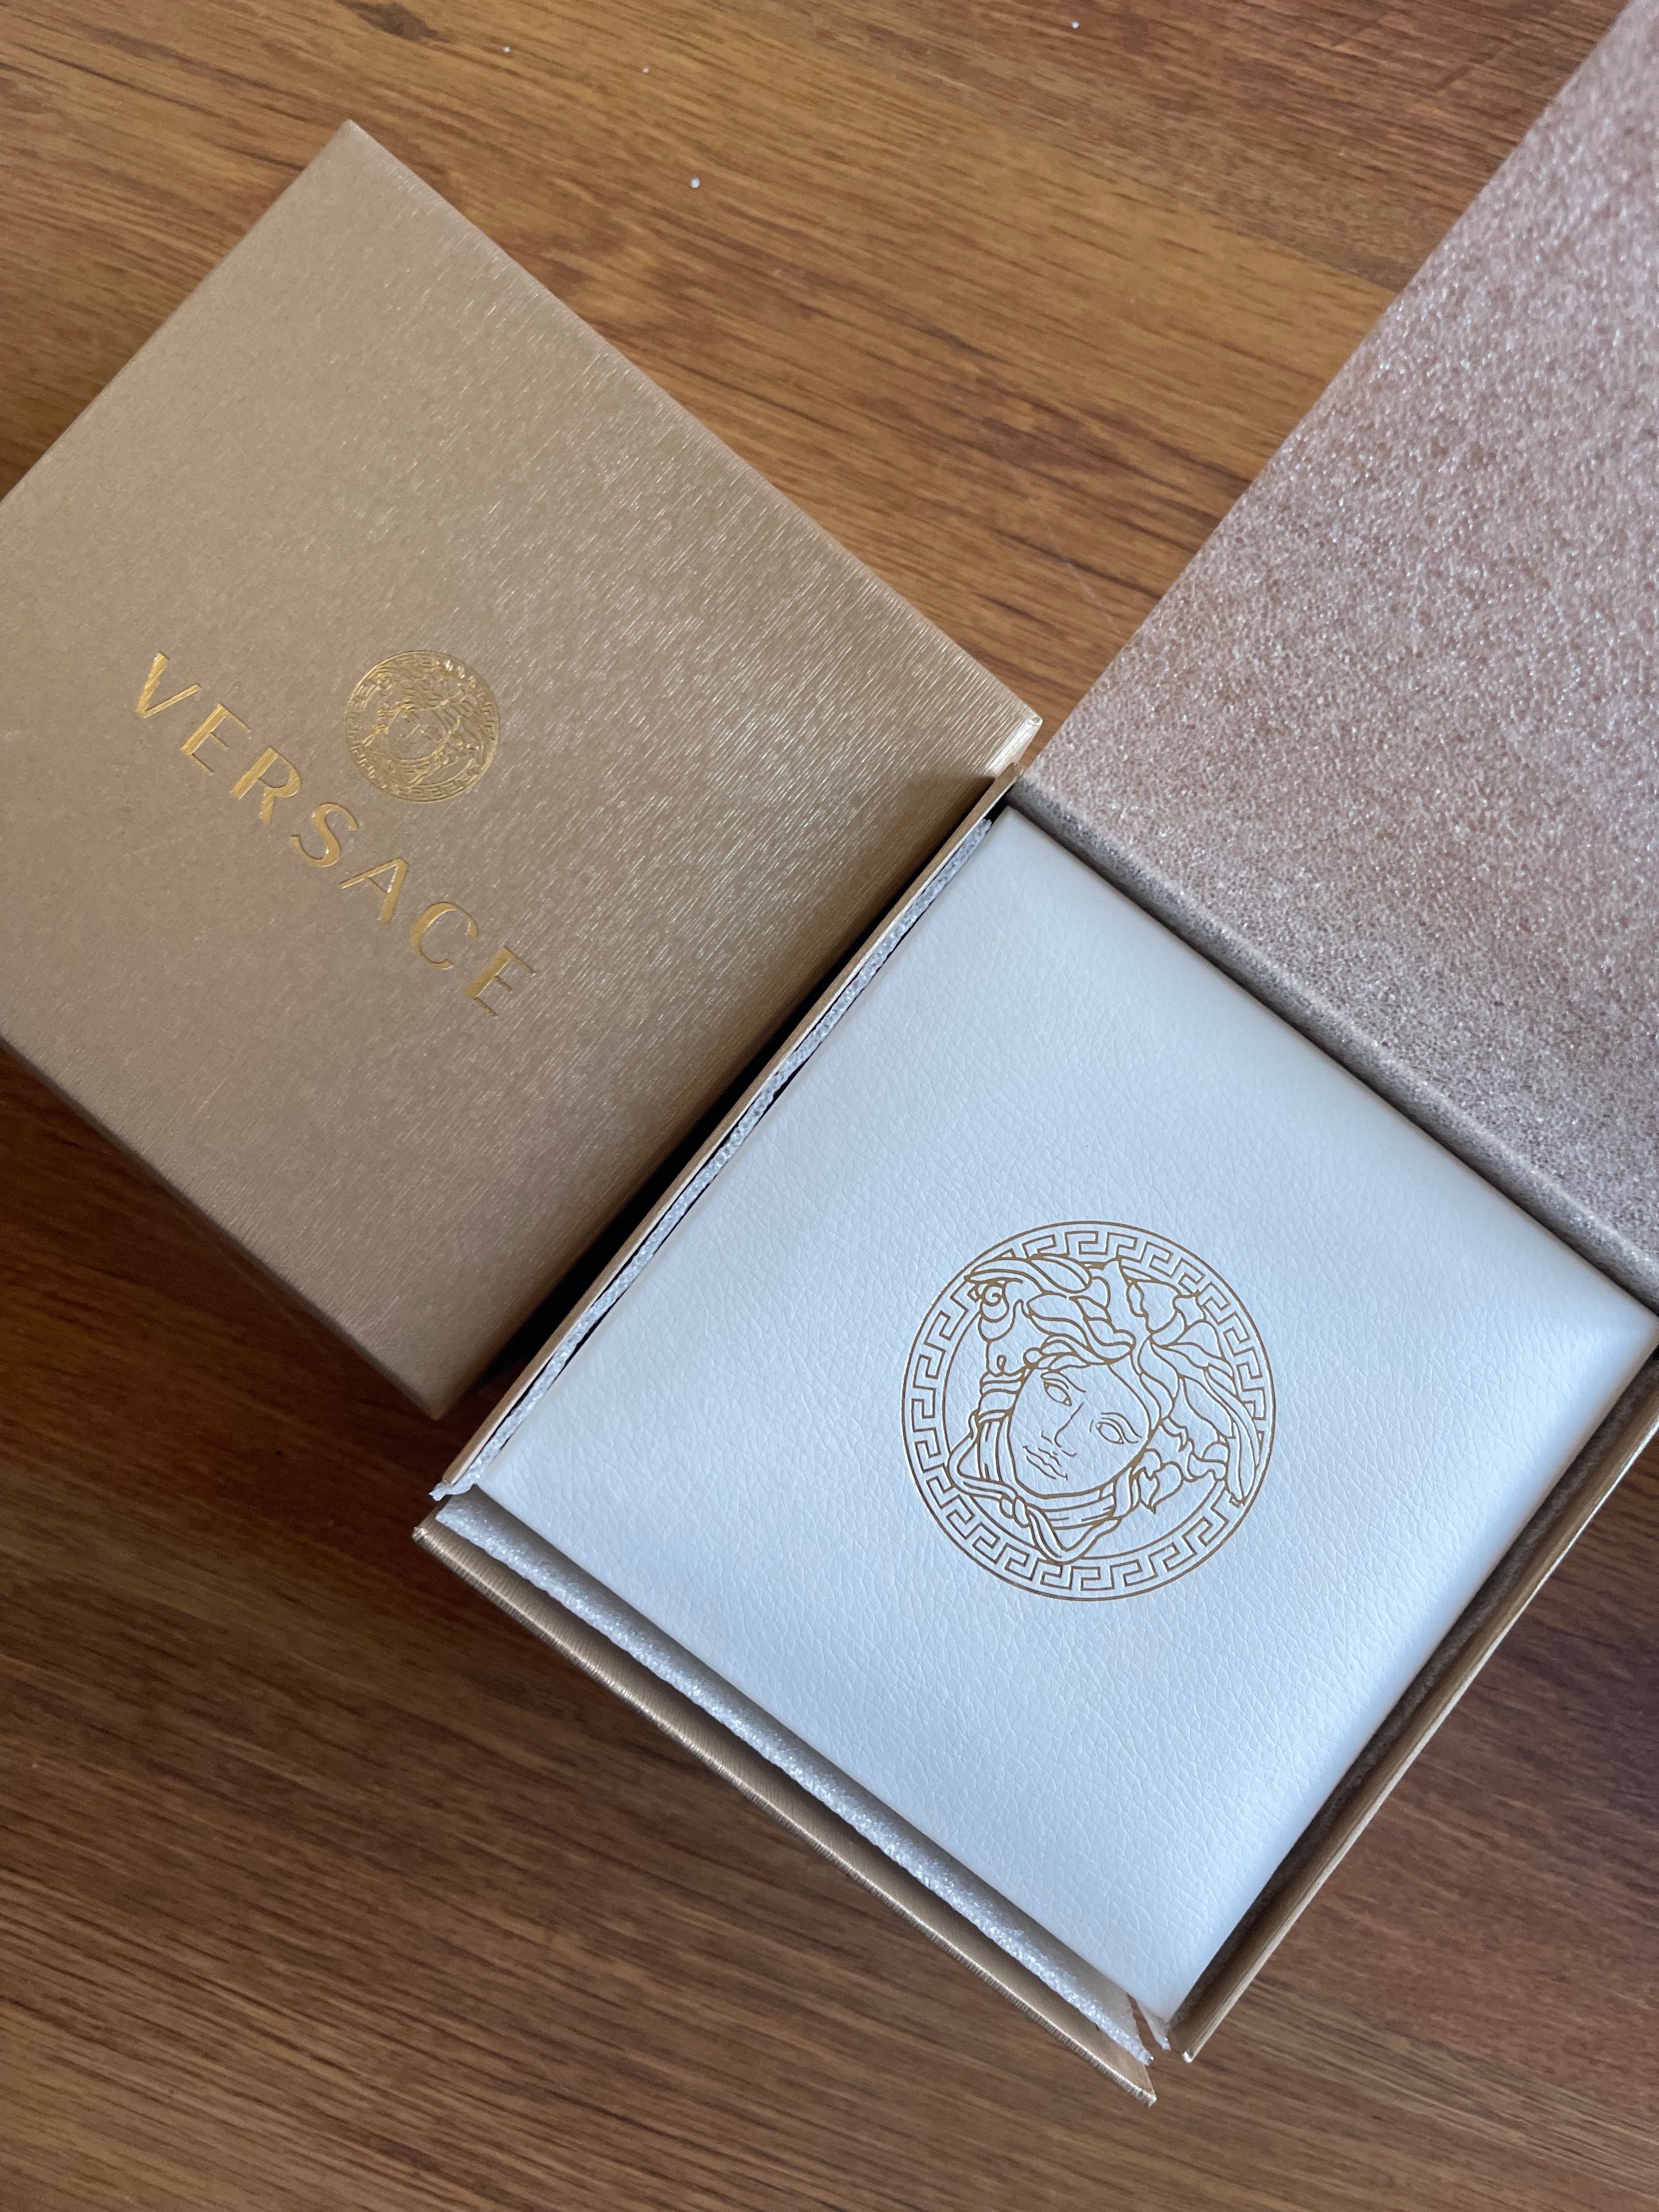 Zegarek Versace Essential złoty czarny pasek skórzany